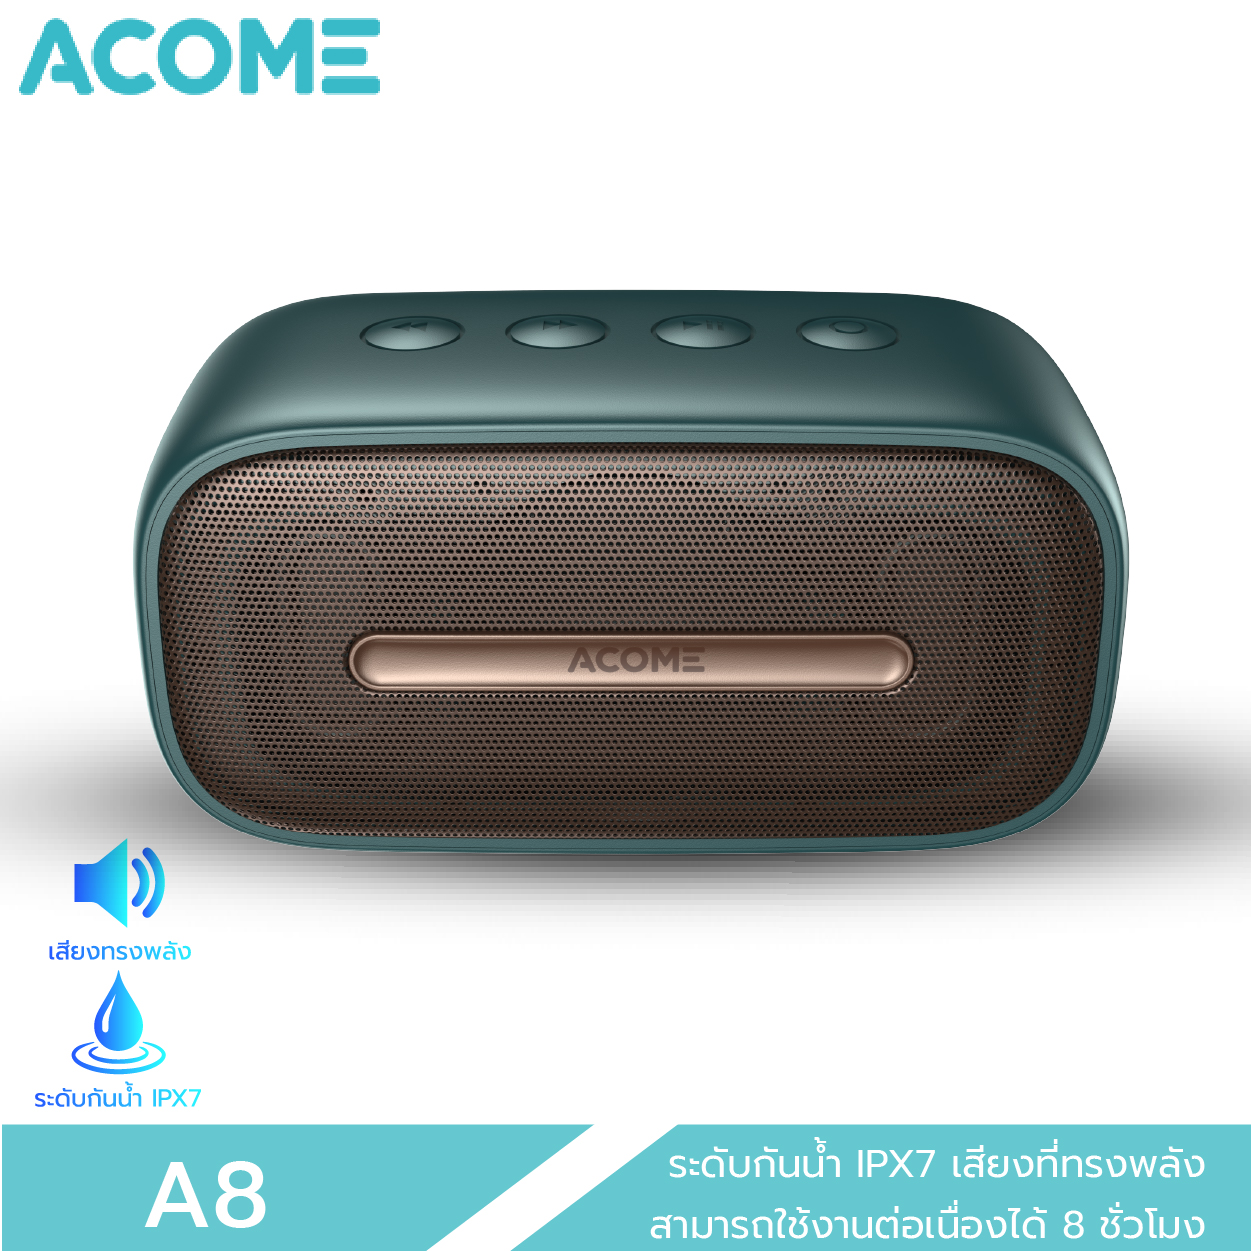 [รับโค๊ดส่วนลด 110 บาท ฟรีทันที] ACOME รุ่น A8 Bluetooth Speaker ลำโพงบลูทูธ ลำโพง ของแท้ 100% ประกัน 12 เดือน